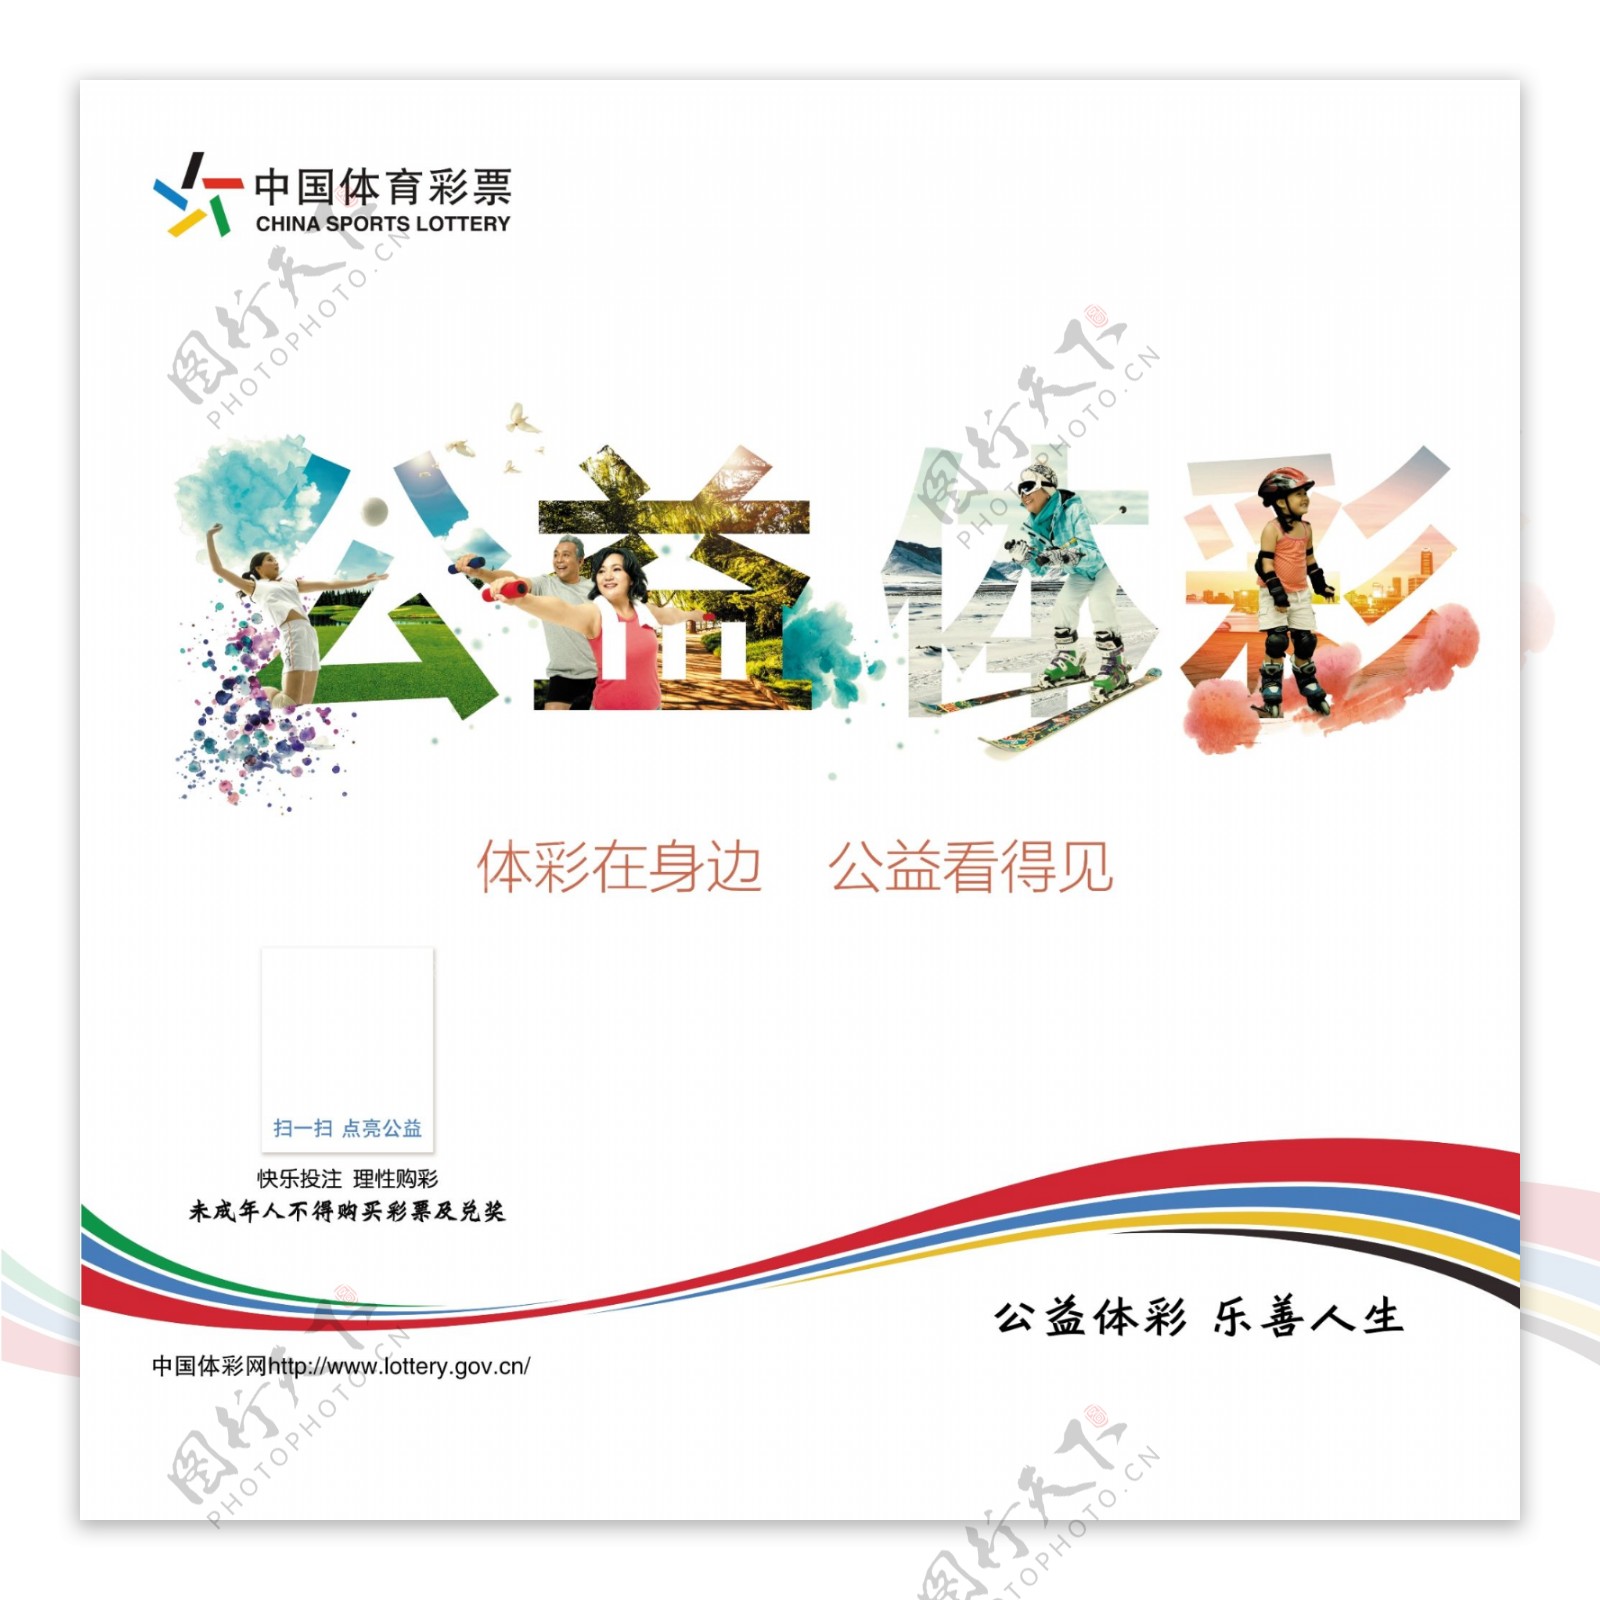 中国体育彩票公益体彩图片